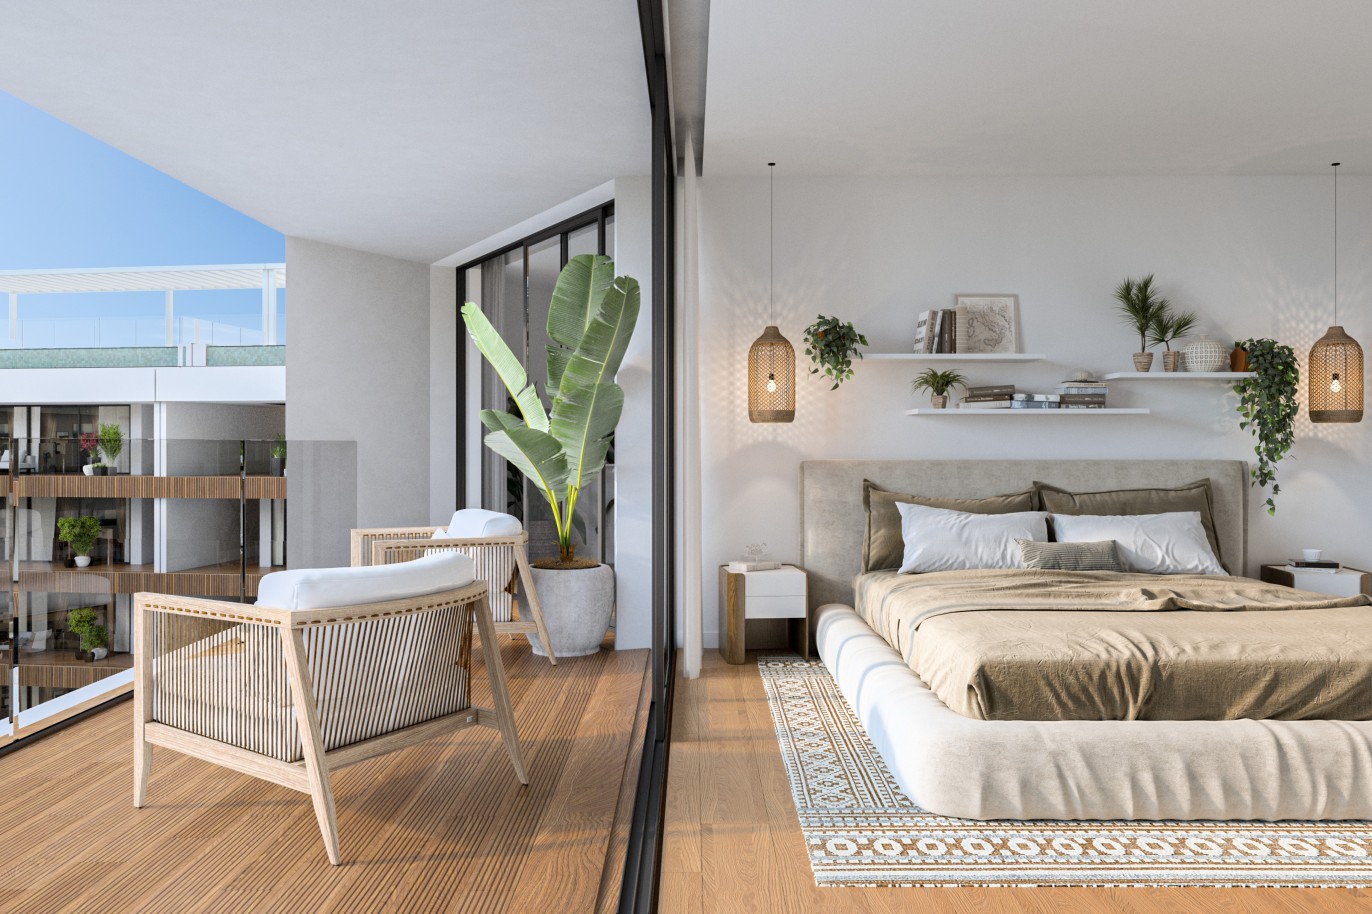 Appartements neufs avec vue sur mer, 1, 2 & 3 chambres, à vendre à Olhão, Algarve_244212